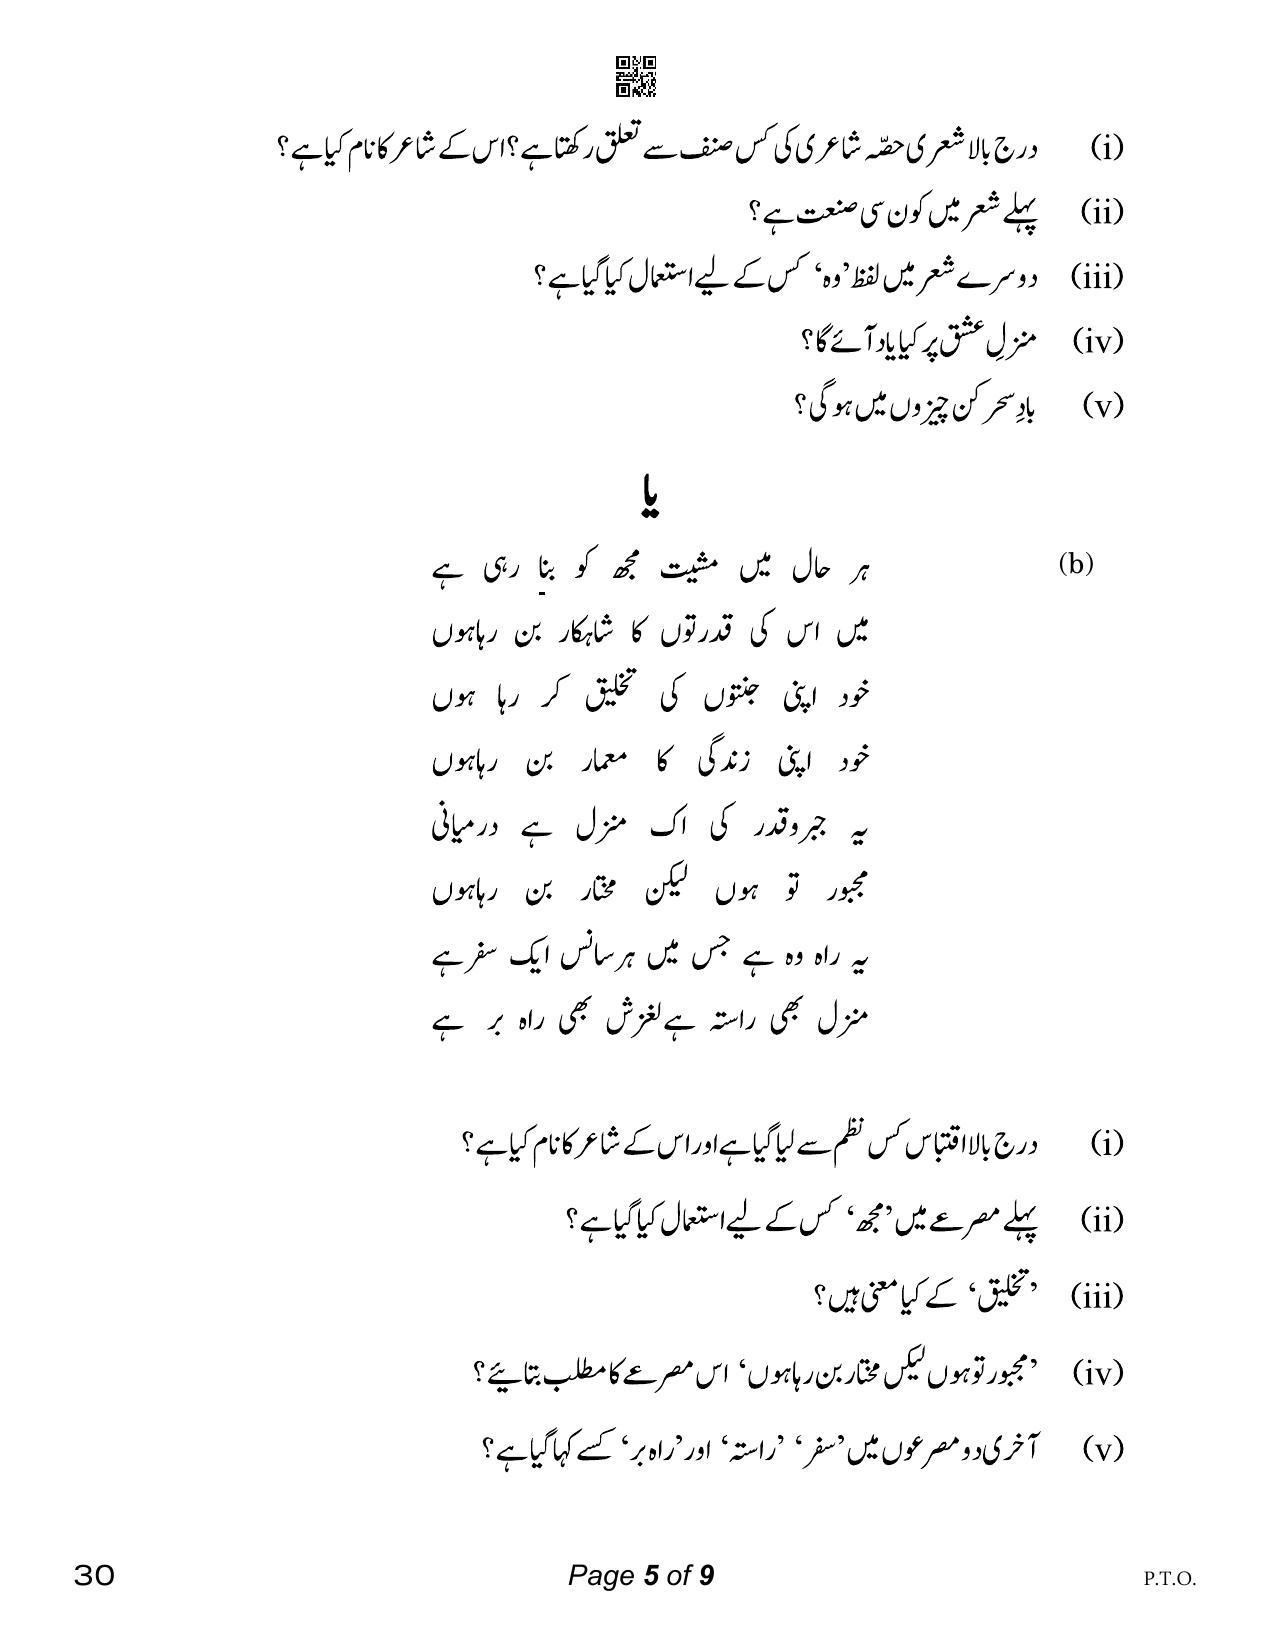 CBSE Class 12 Urdu Elective (Compartment) 2023 Question Paper - Page 5